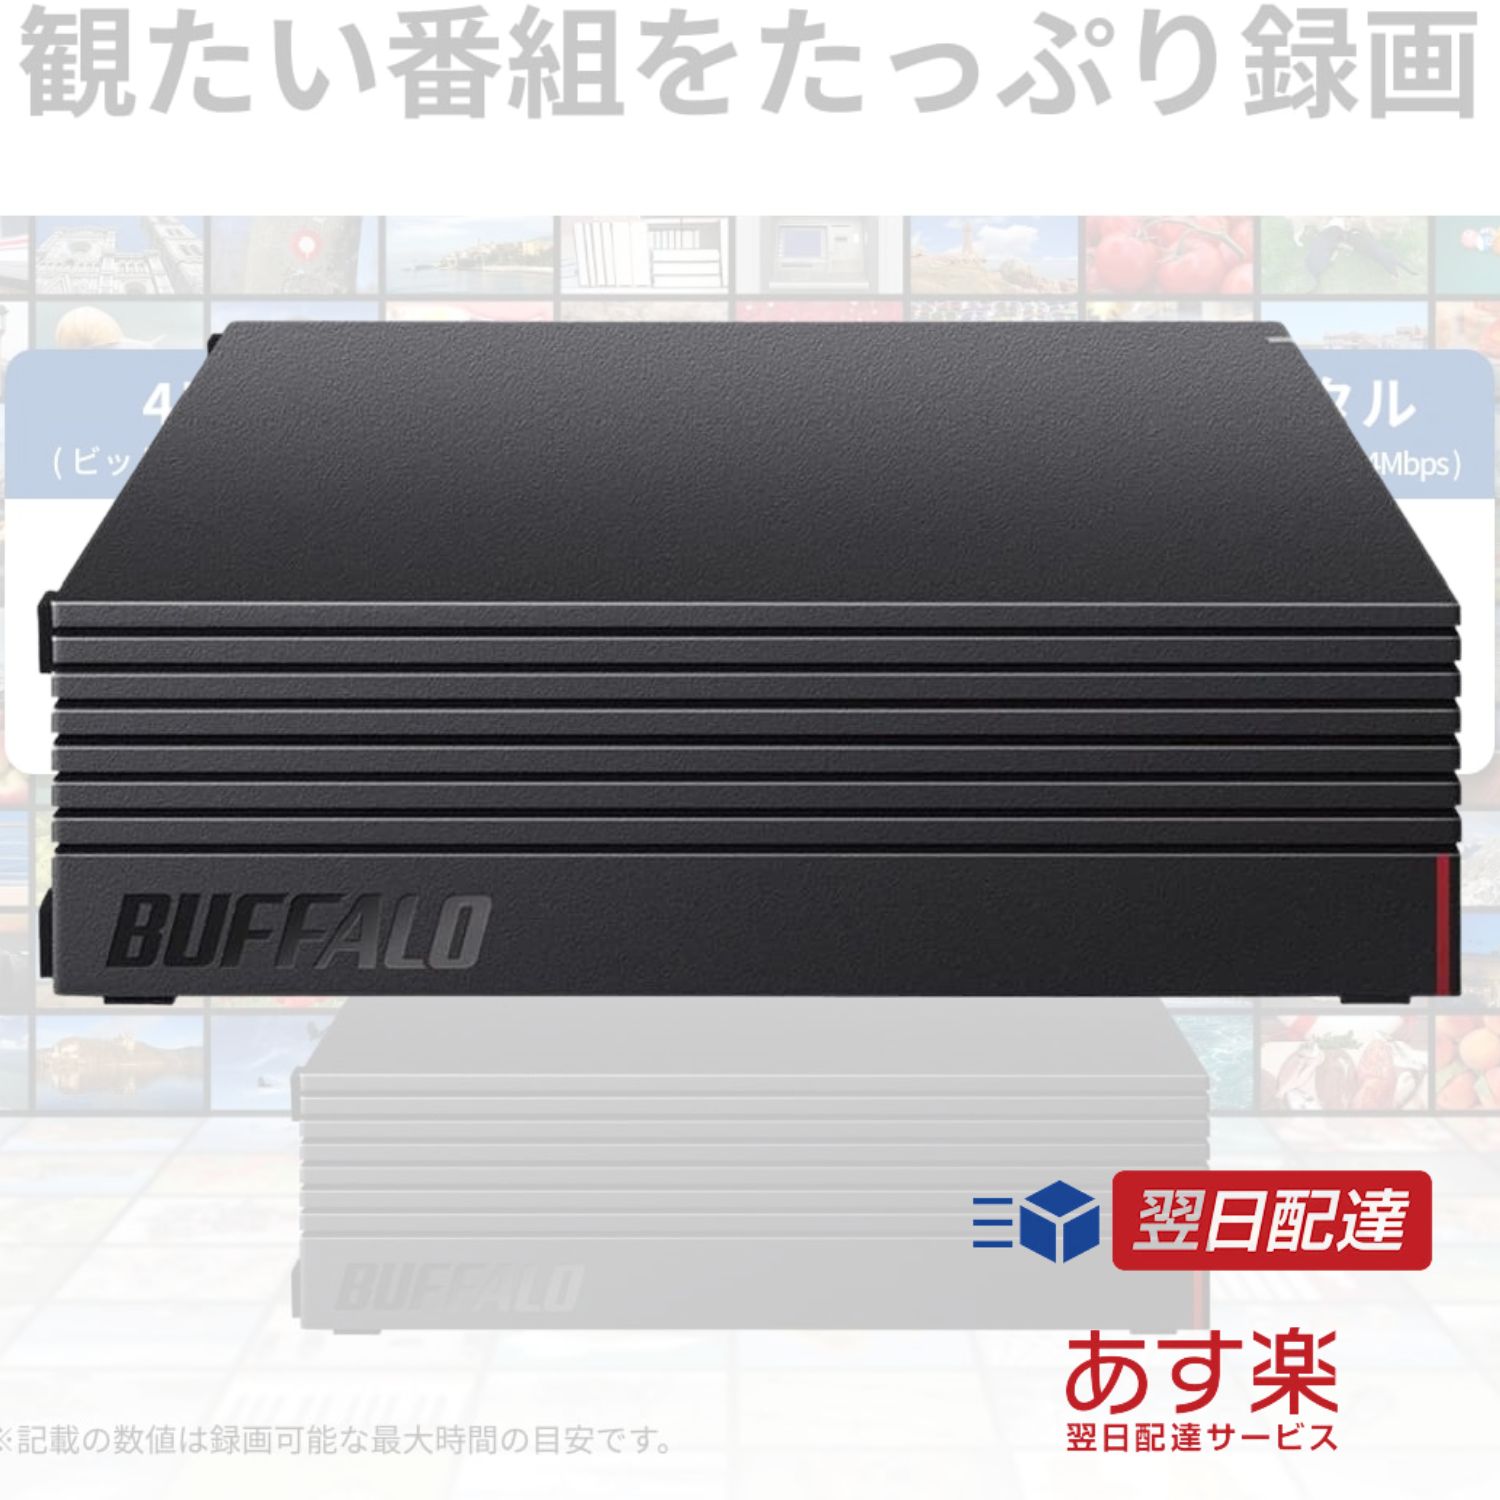 外付けハードディスク 4TBバッファロー  BUFFALO 外付けハードディスク テレビ録画 PC PS4 4K対応 バッファロー製nasne 対応 静音コンパクト 日本製 故障予測 みまもり合図 HD-AD4U3 HDD